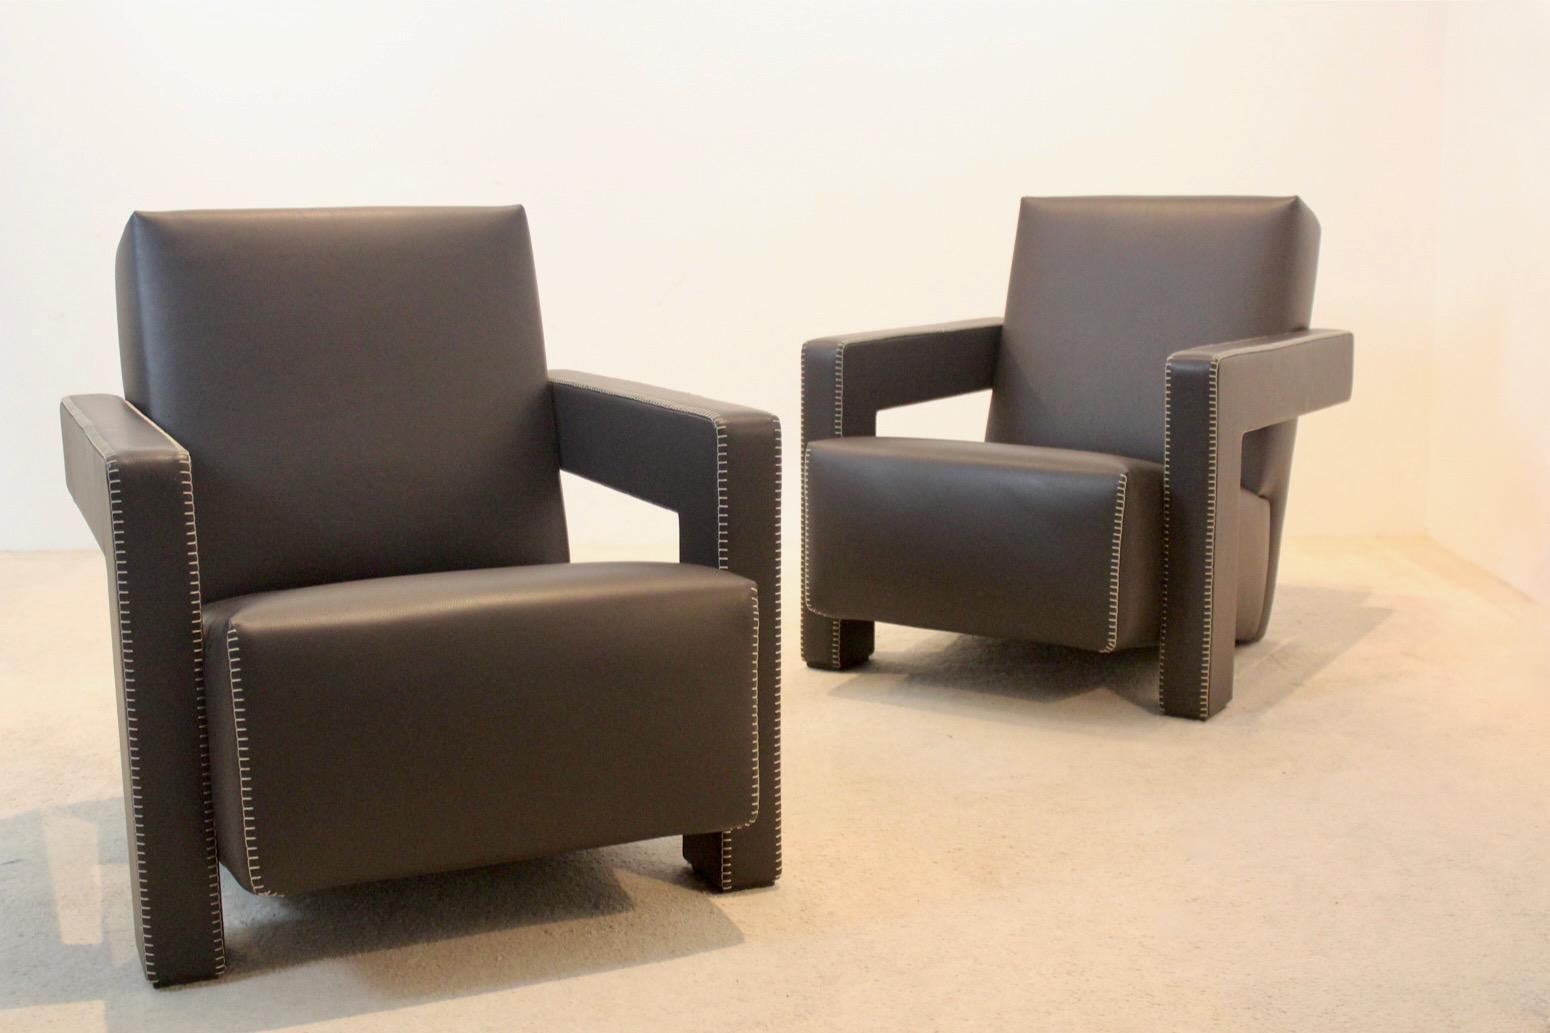 Gerrit Rietveld Chocolate Brown Leder Utrecht Sessel in fantastischem Zustand. Rietveld, niederländischer Architekt mit ausgeprägtem Hang zum Experimentieren und 1917 zusammen mit Mondrian einer der Begründer der neoplastischen 